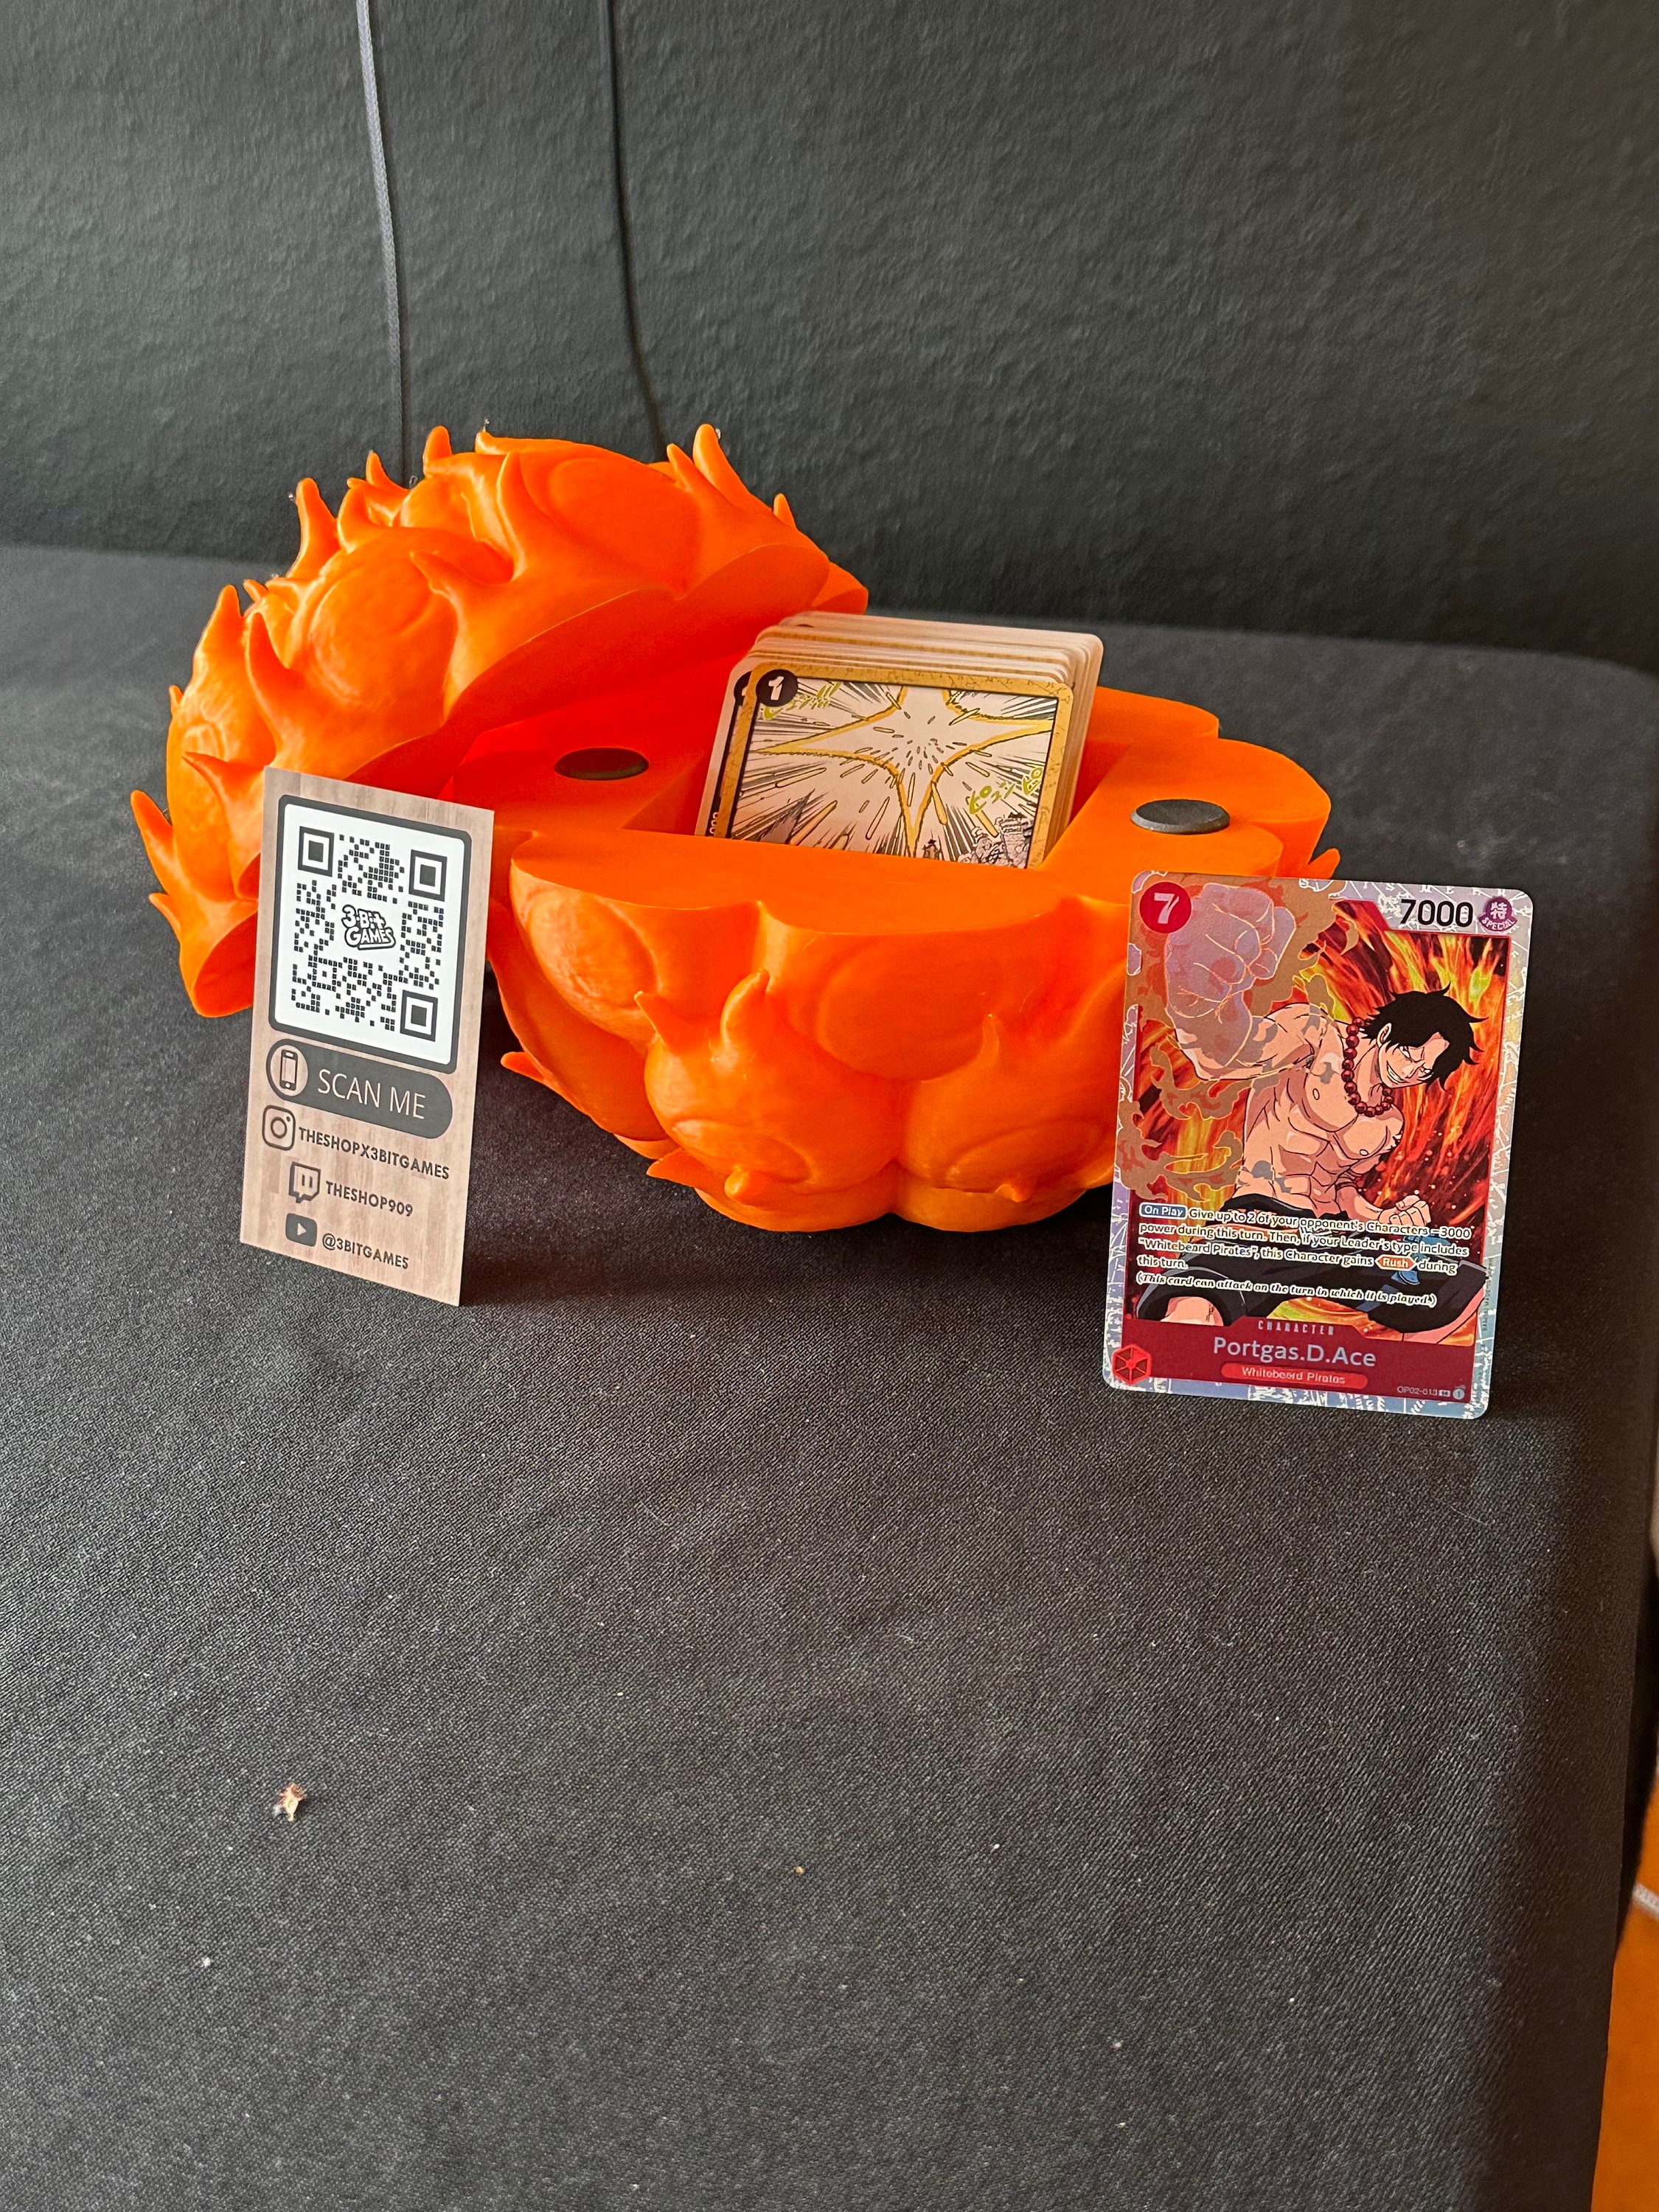 Deck Box Fruits du démon - One Piece - Acheter vos accessoires de jeux,  Funko Pop & produits dérivés - Playin by Magic Bazar